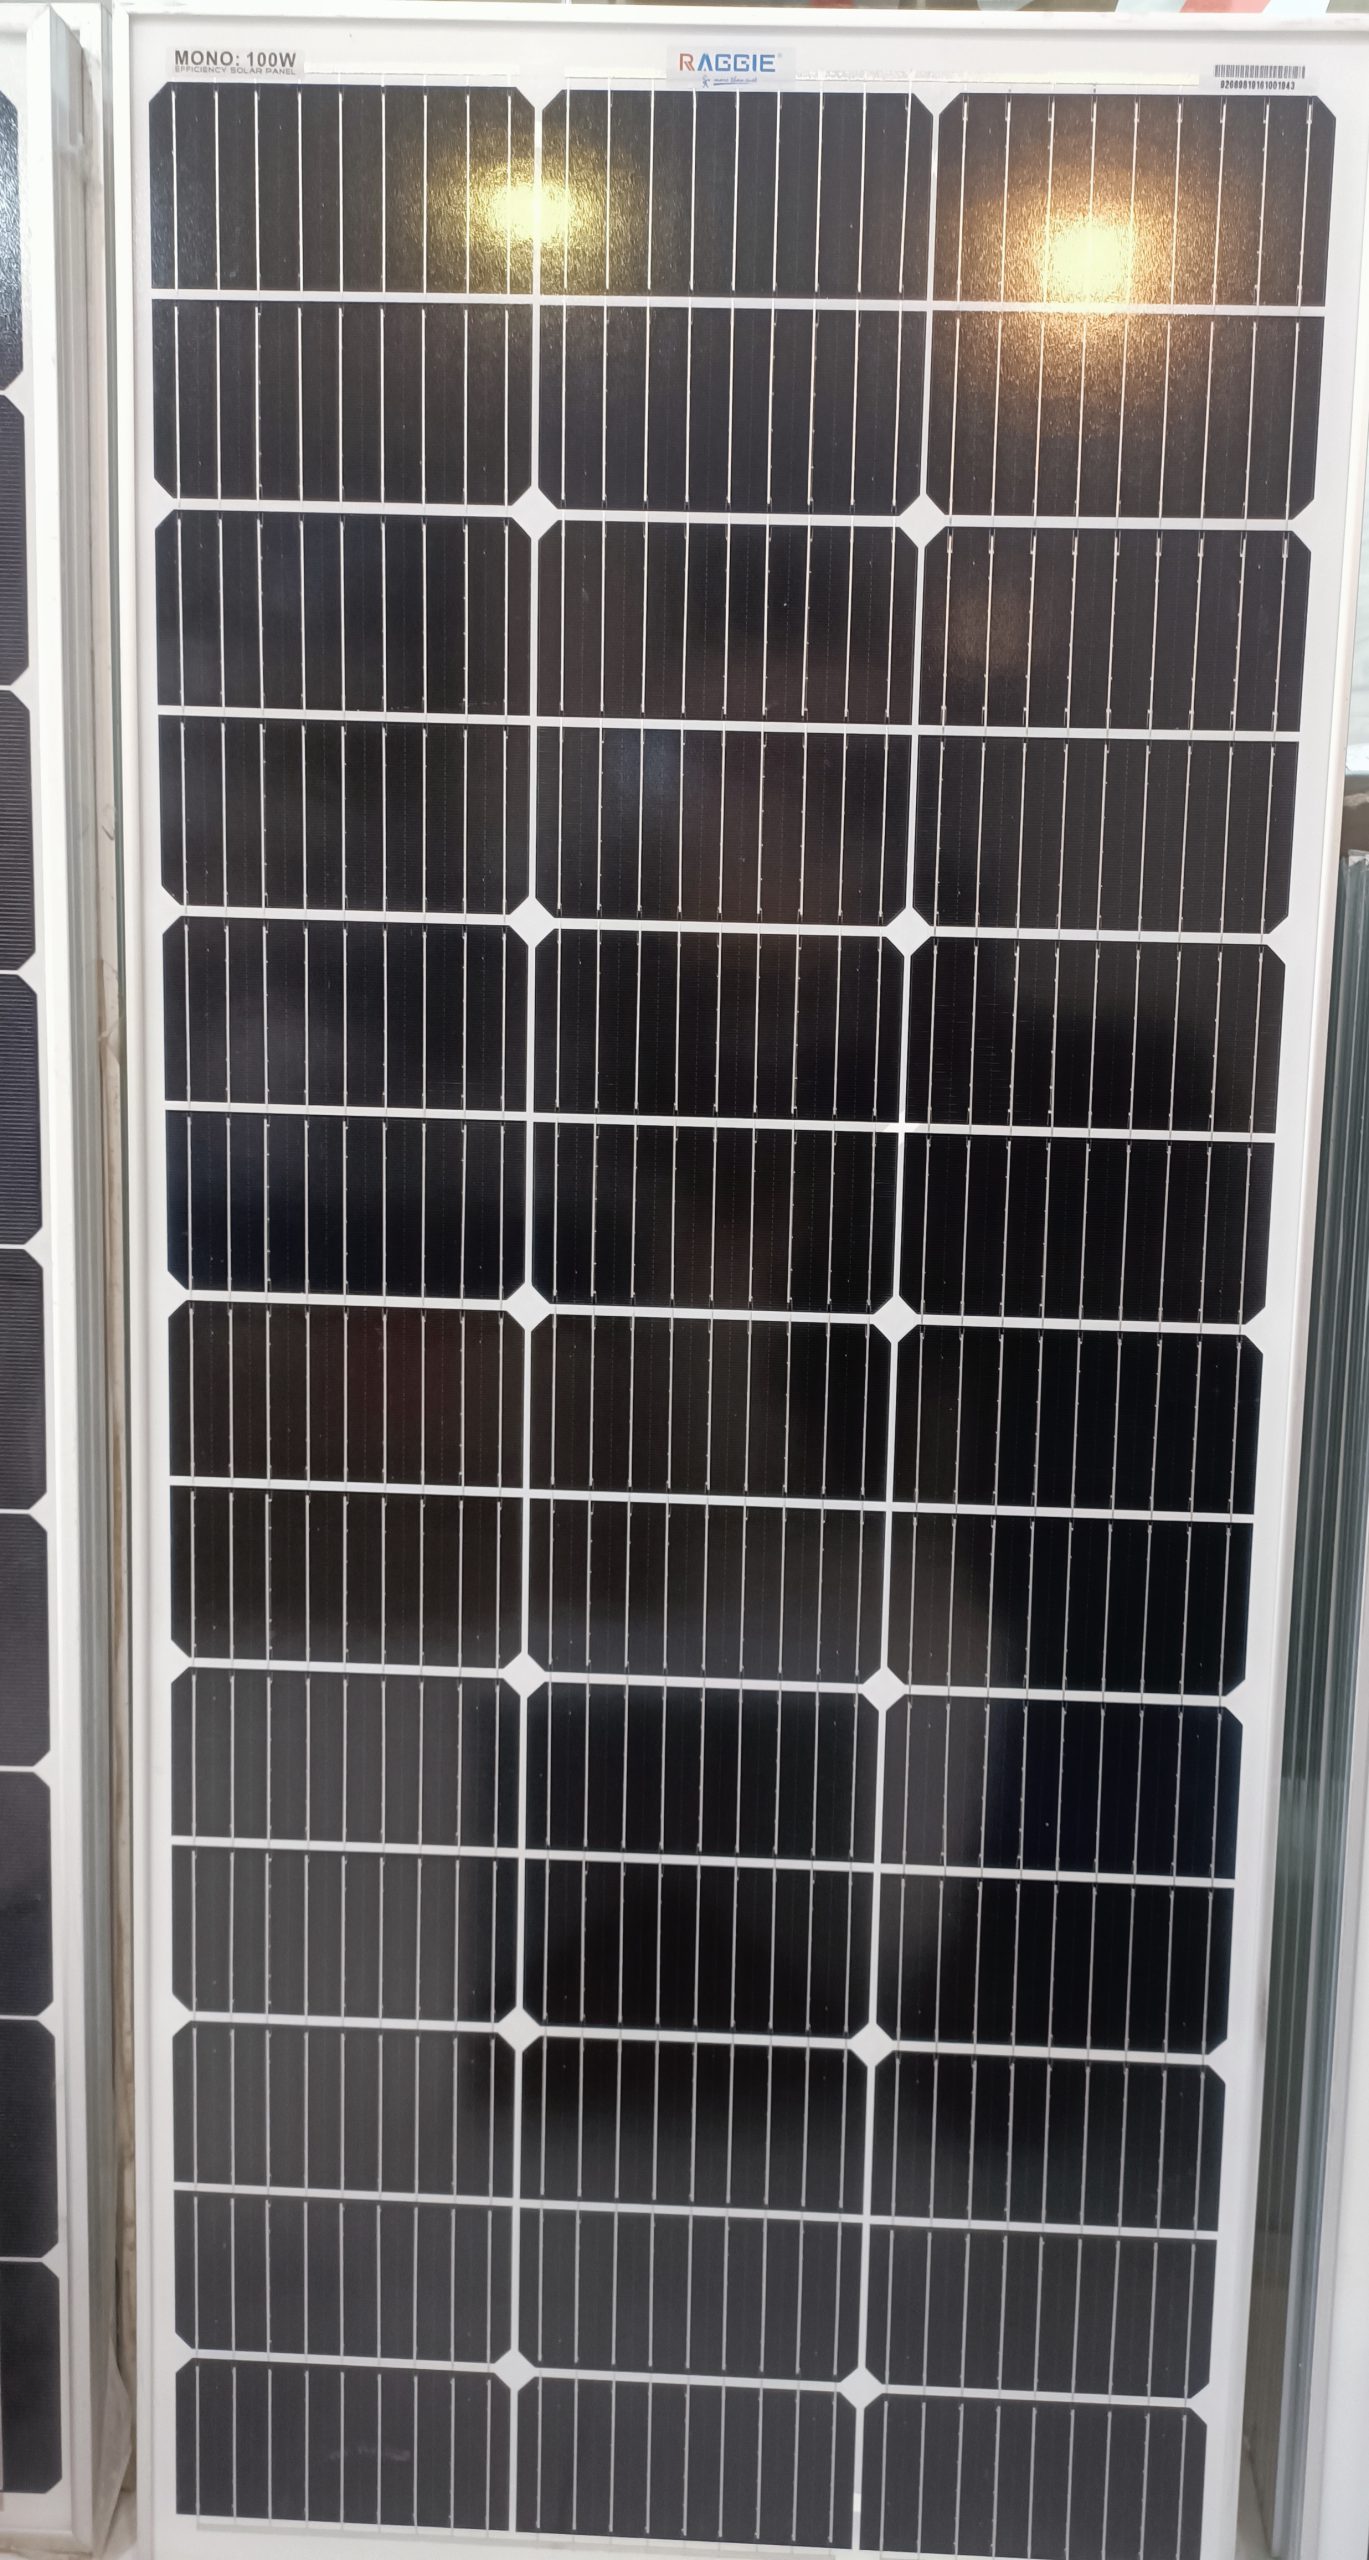 پنل خورشیدی 100 وات Raggie